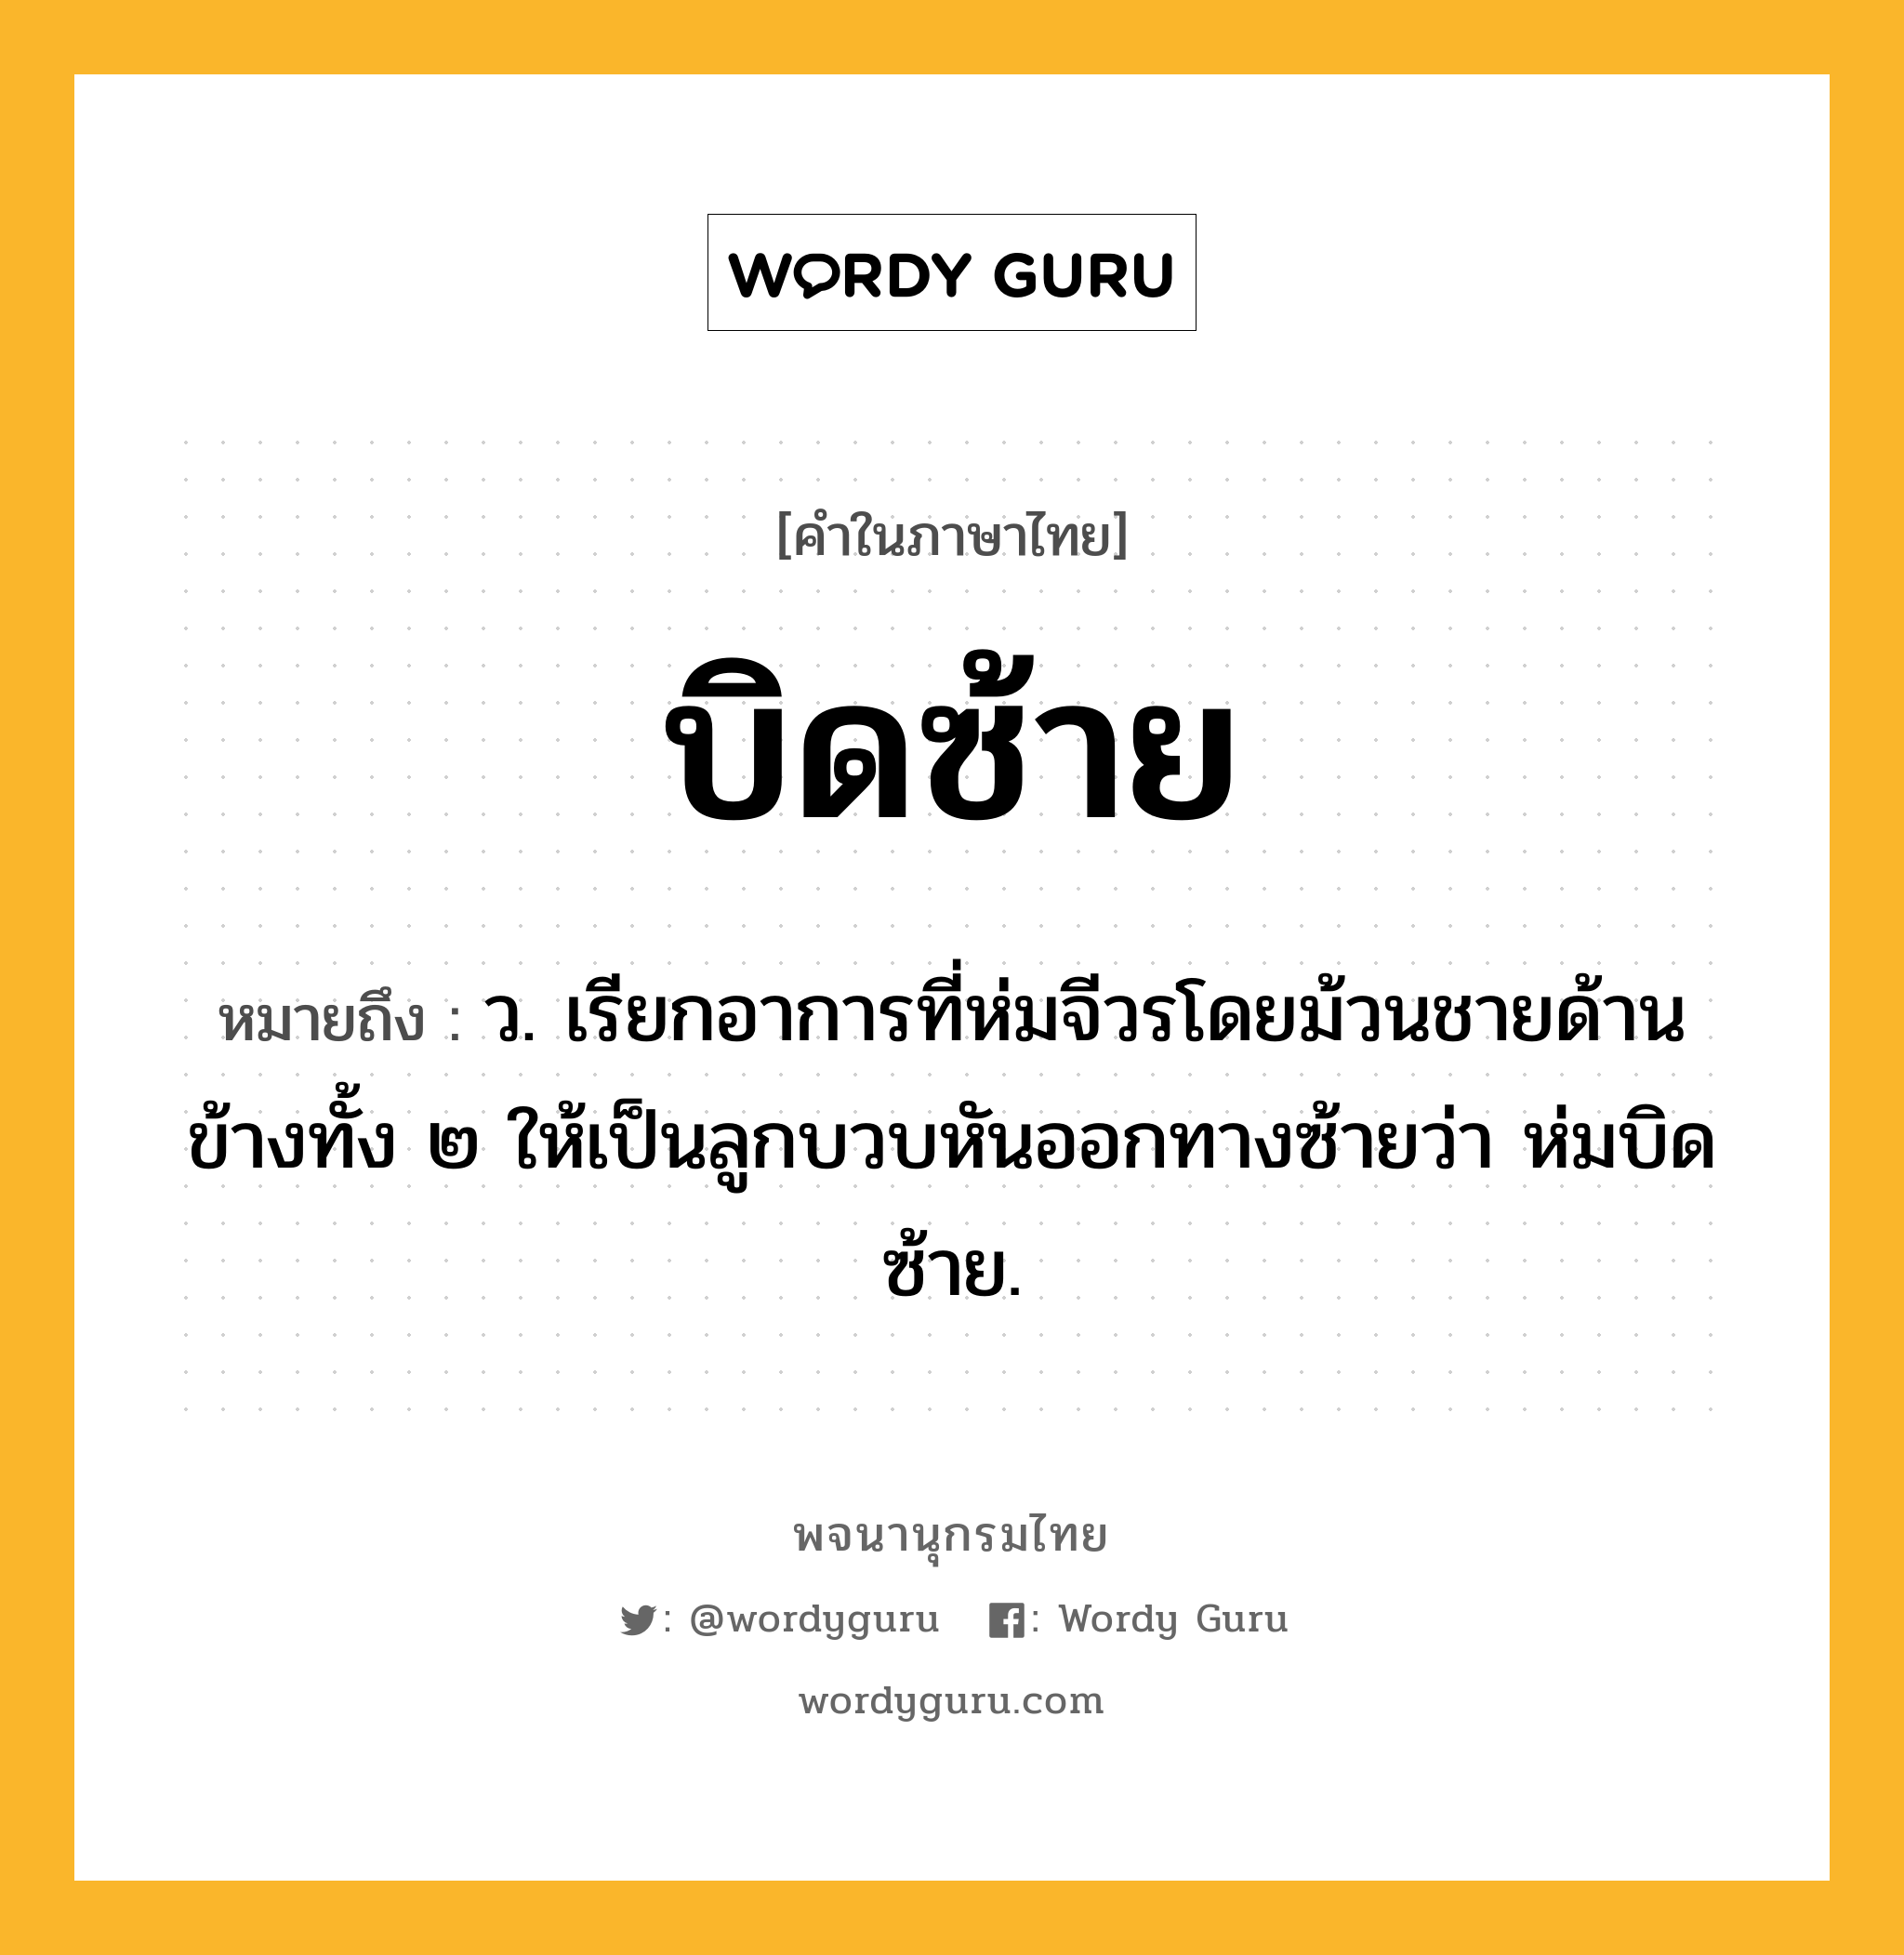 บิดซ้าย ความหมาย หมายถึงอะไร?, คำในภาษาไทย บิดซ้าย หมายถึง ว. เรียกอาการที่ห่มจีวรโดยม้วนชายด้านข้างทั้ง ๒ ให้เป็นลูกบวบหันออกทางซ้ายว่า ห่มบิดซ้าย.